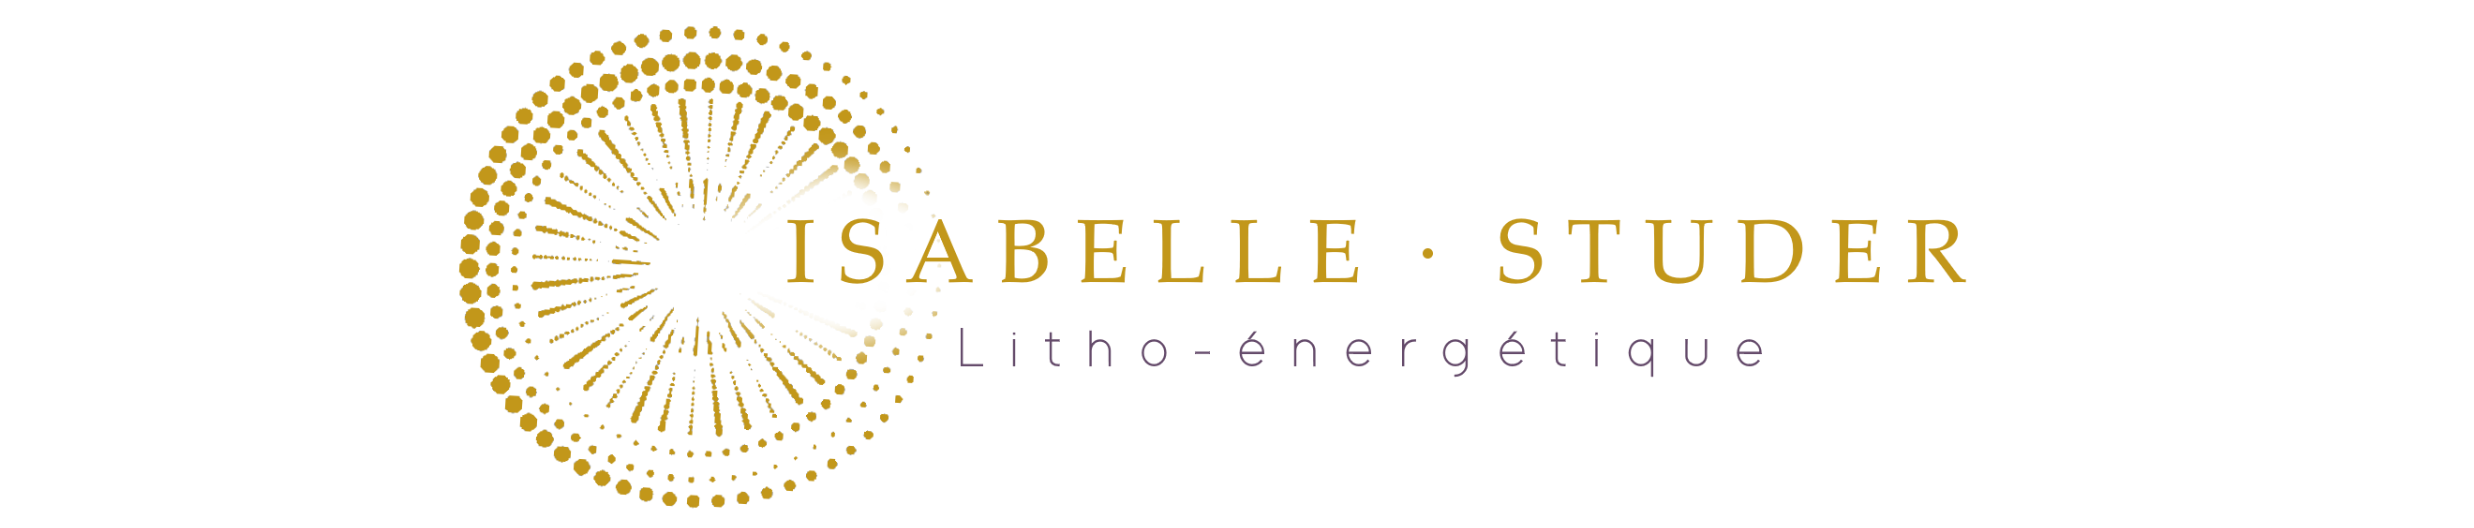 Isabelle Studer – Litho-énergétique. Tous droits réservés